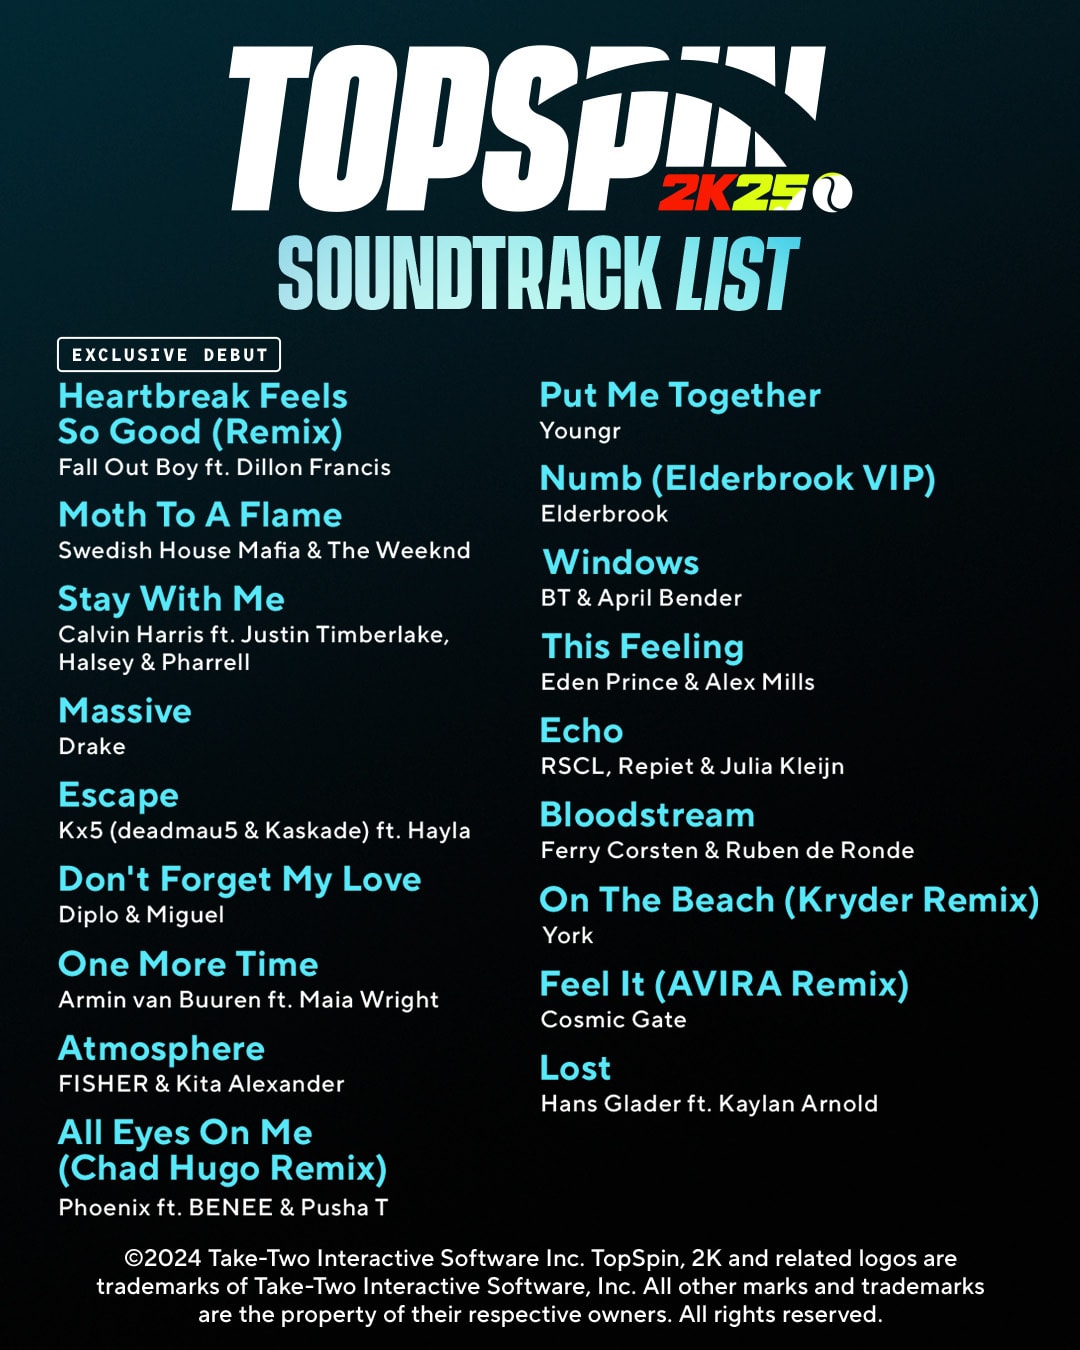 TopSpin 2K25 Soundtrack list 2